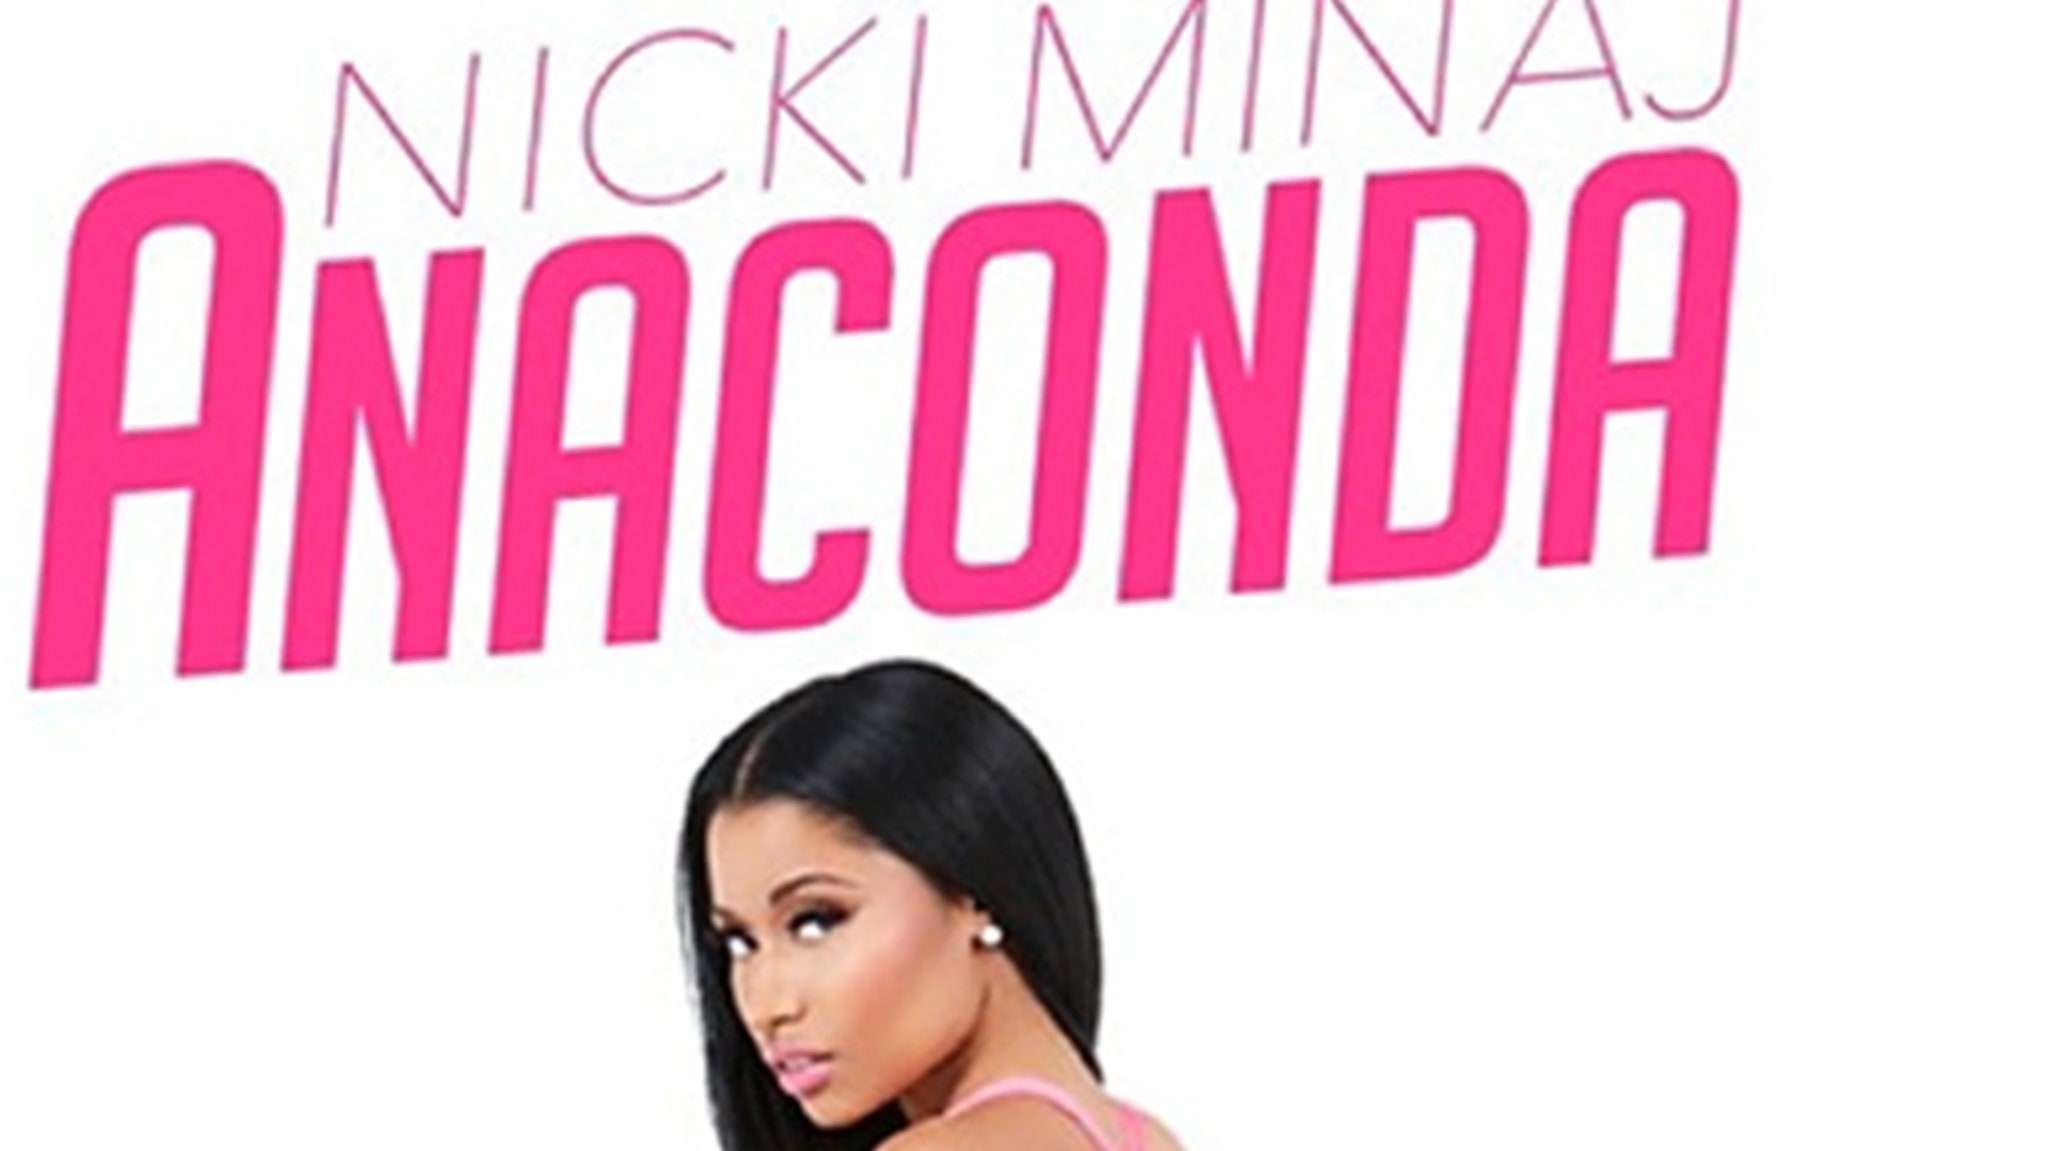 Nicki Minaj Bares Booty in a GString on "Anaconda" Cover Art